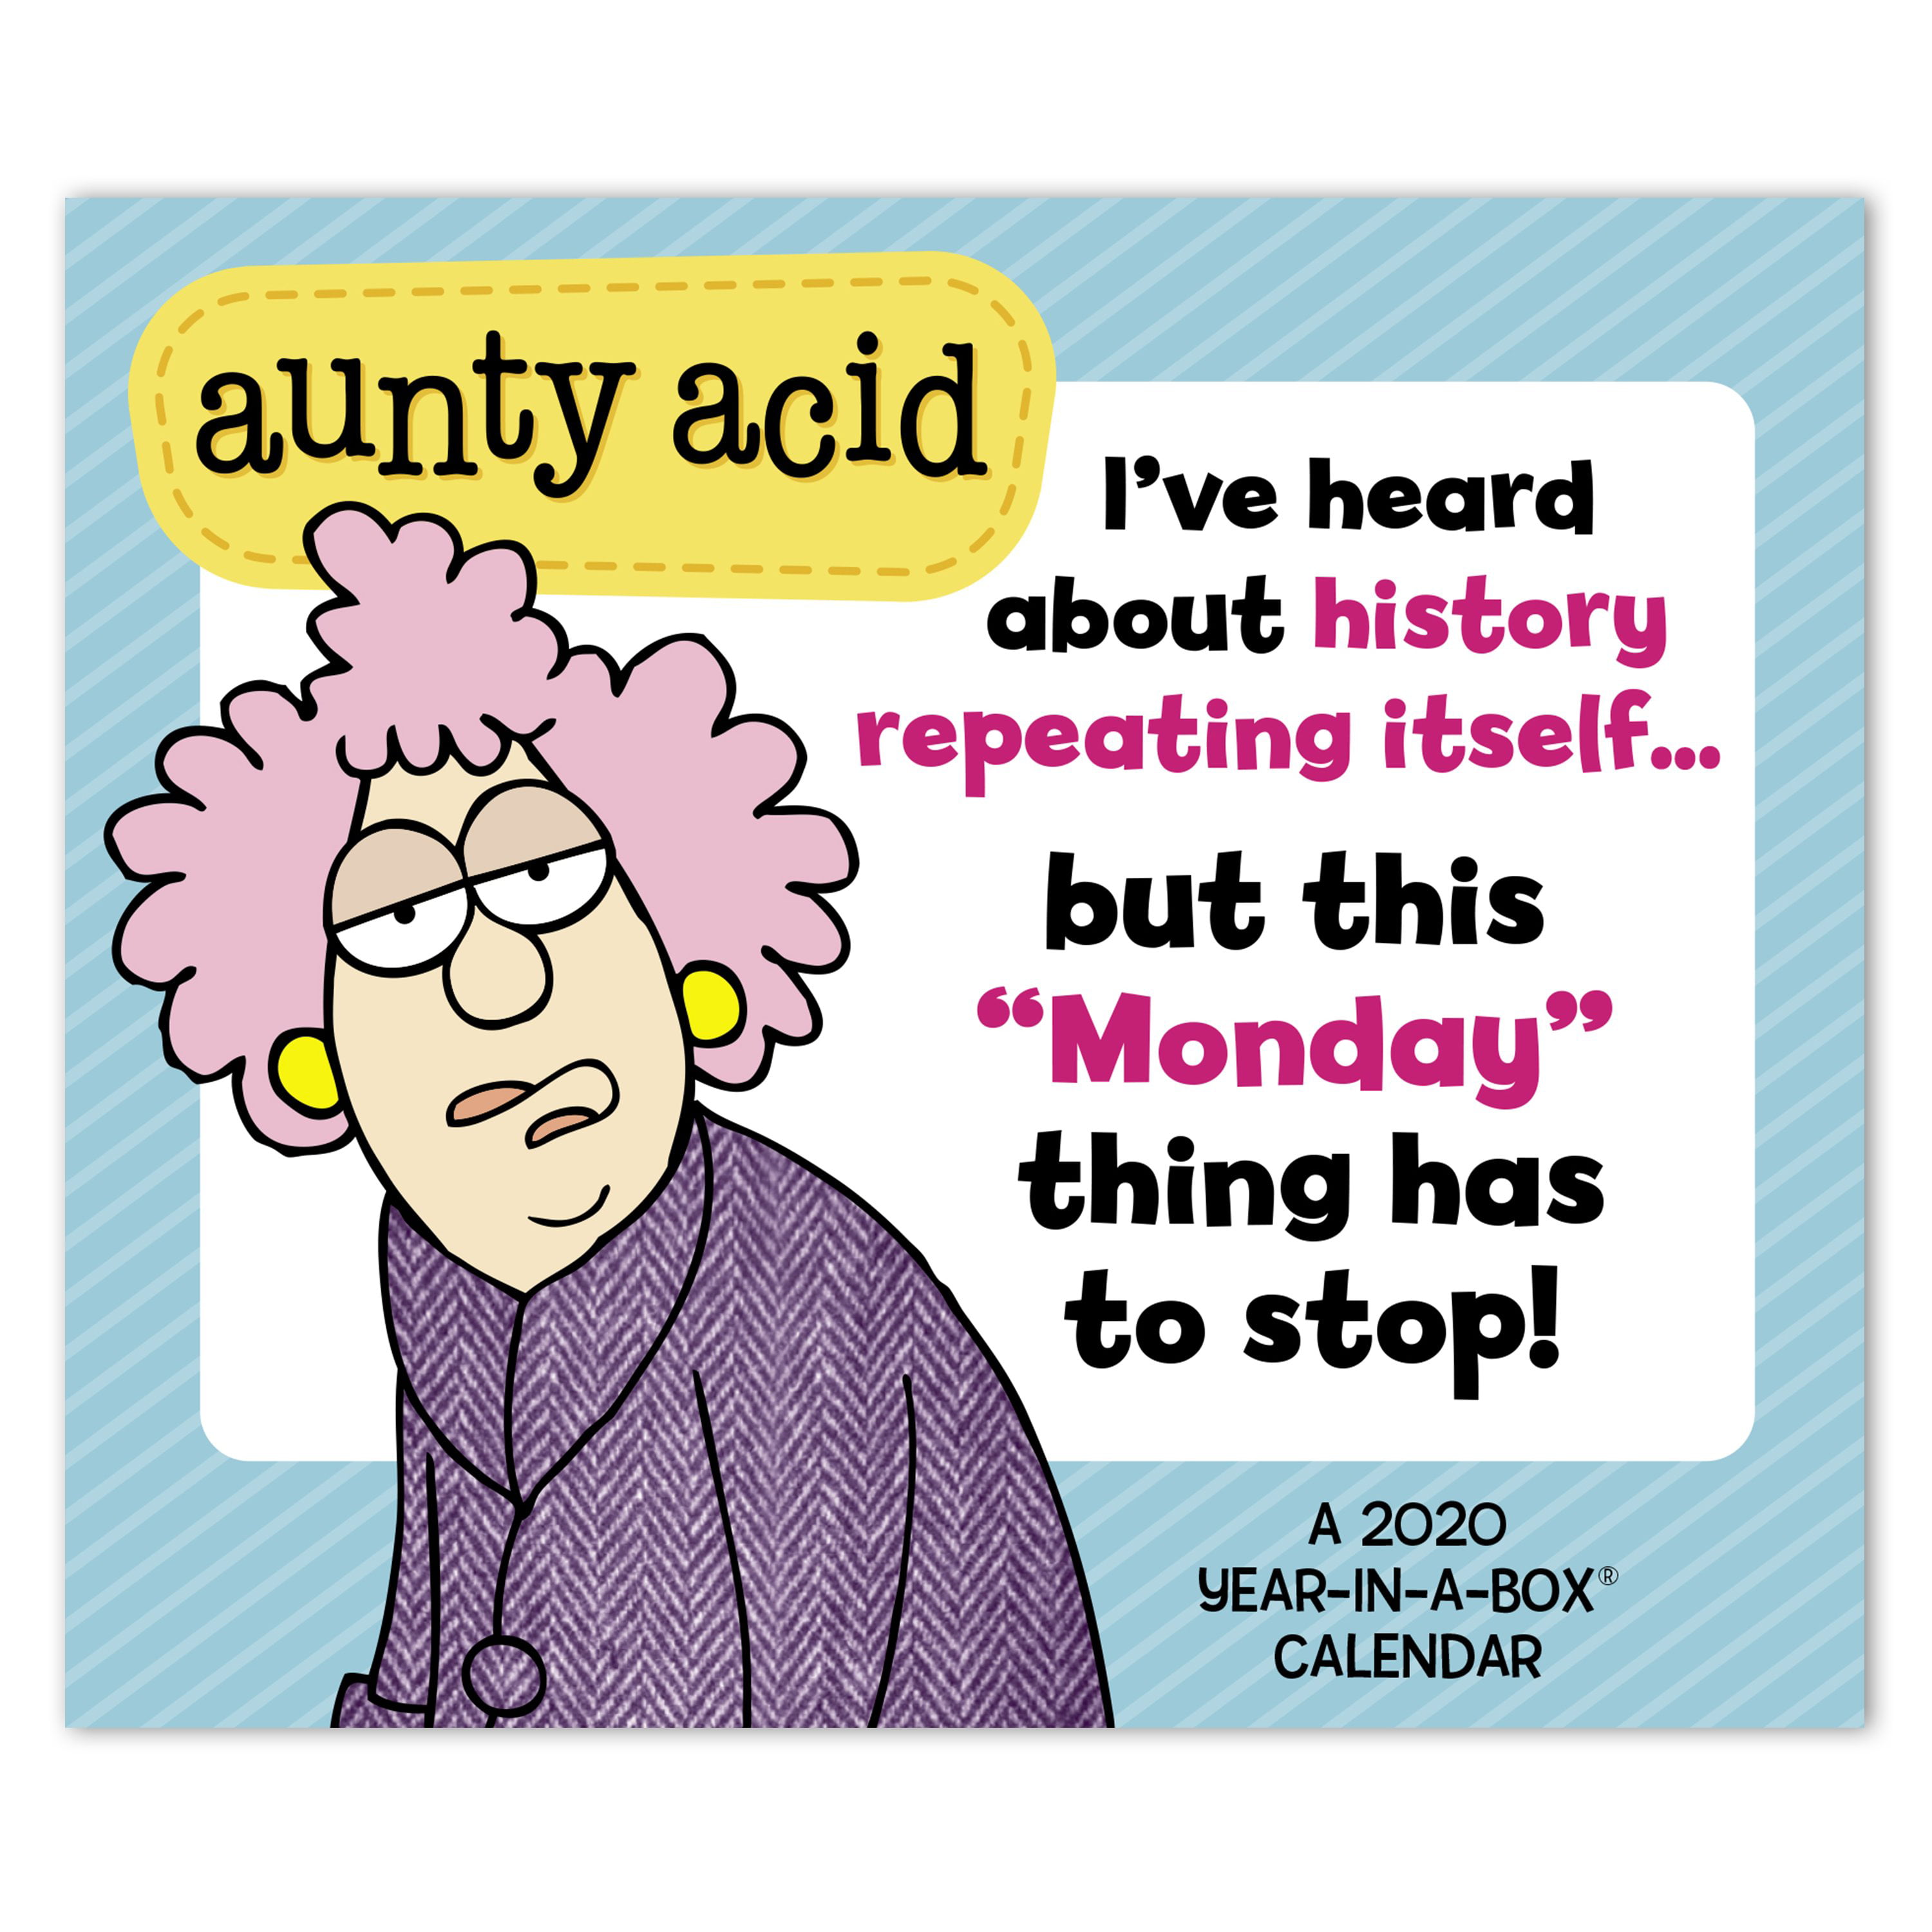 2020-aunty-acid-year-in-a-box-calendar-walmart-walmart